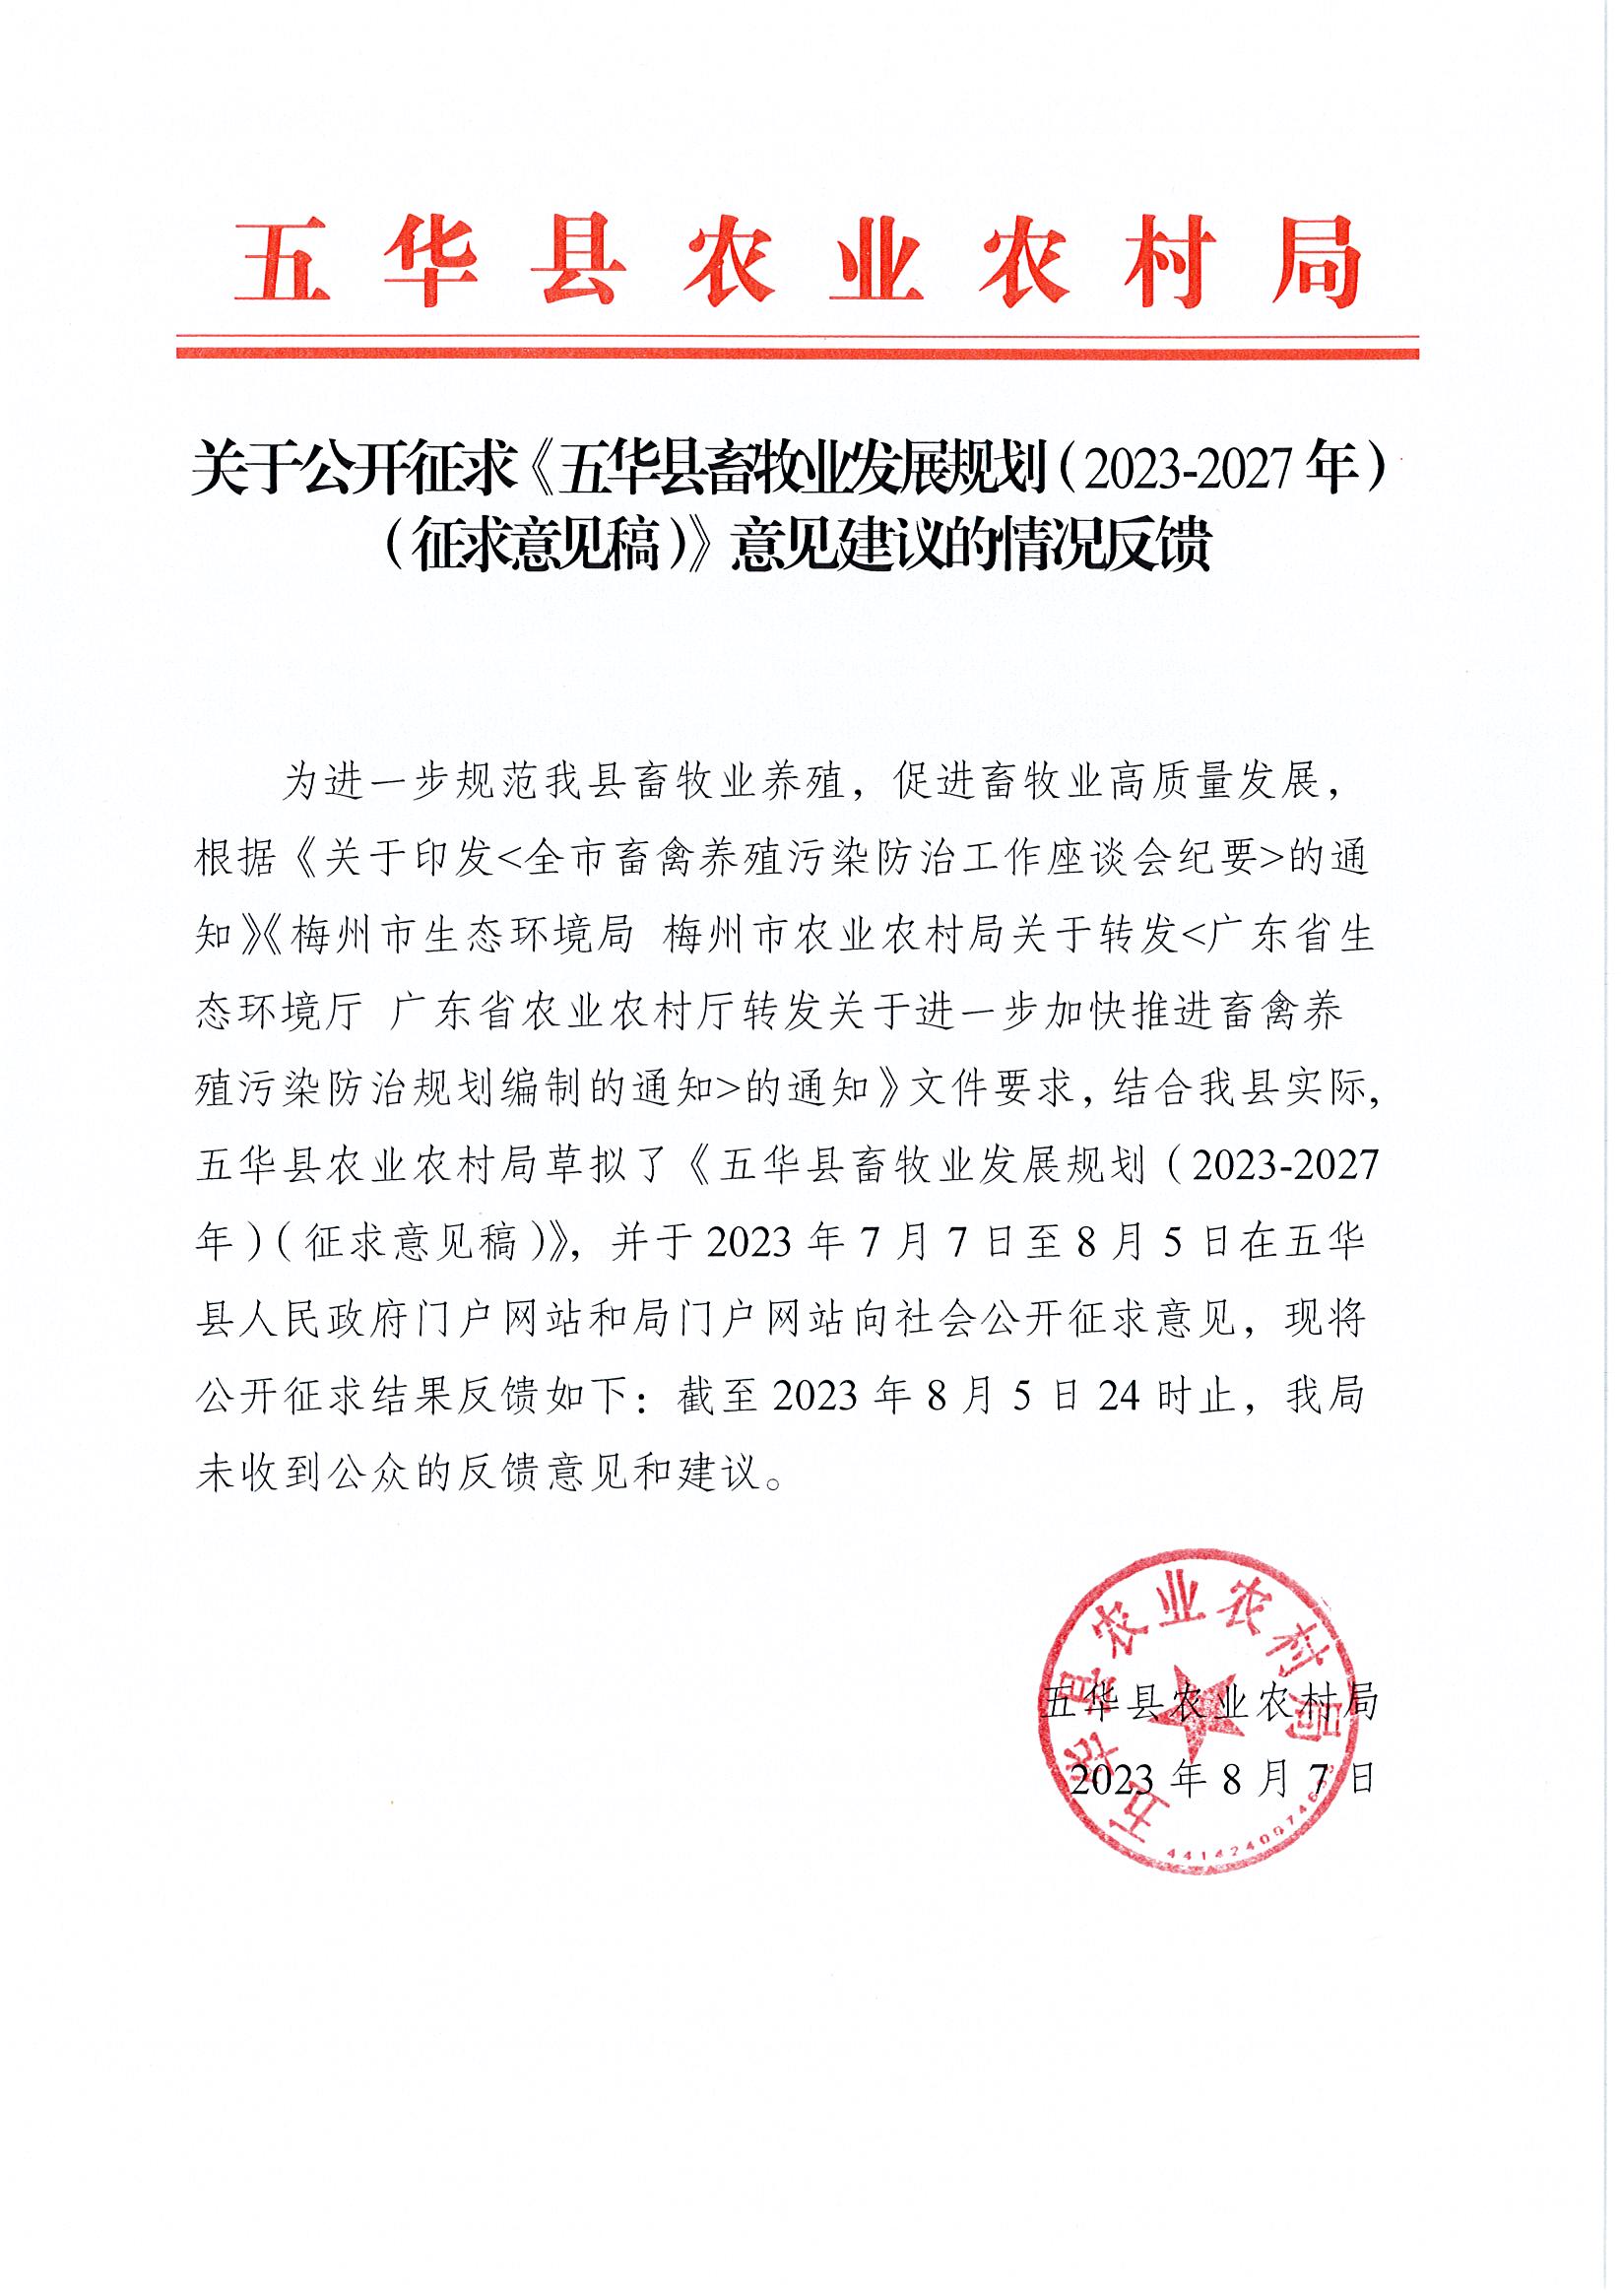 关于公开征求《五华县畜牧业发展规划（2023-2027年）（征求意见稿）》意见建议的情况反馈1.jpg